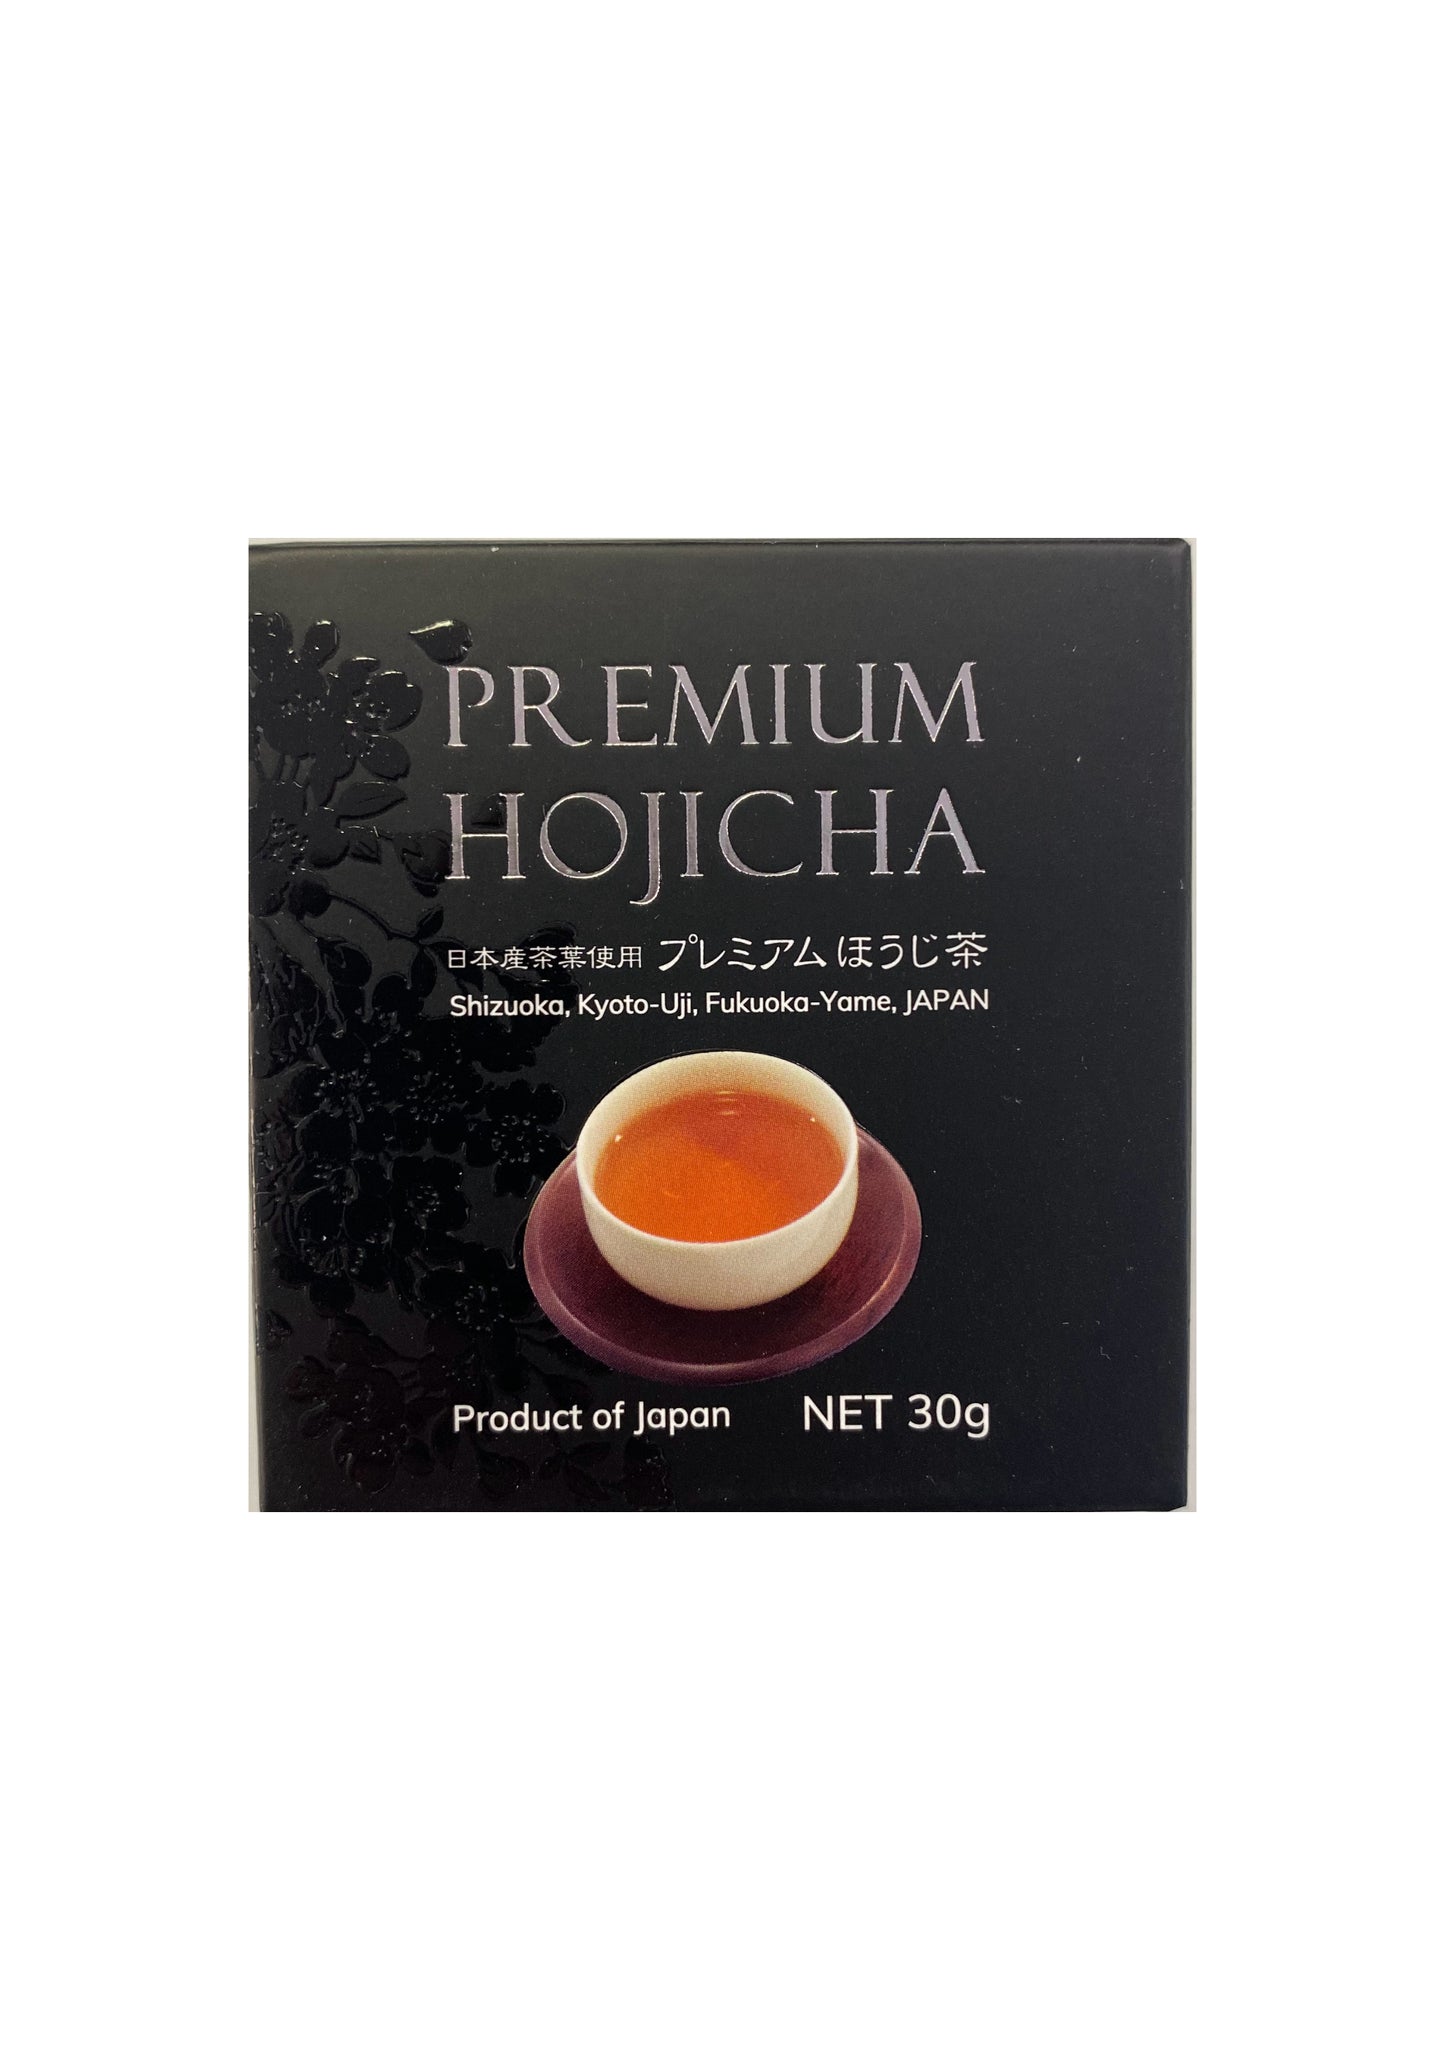 Premium Matcha/Hojicha Powder Set